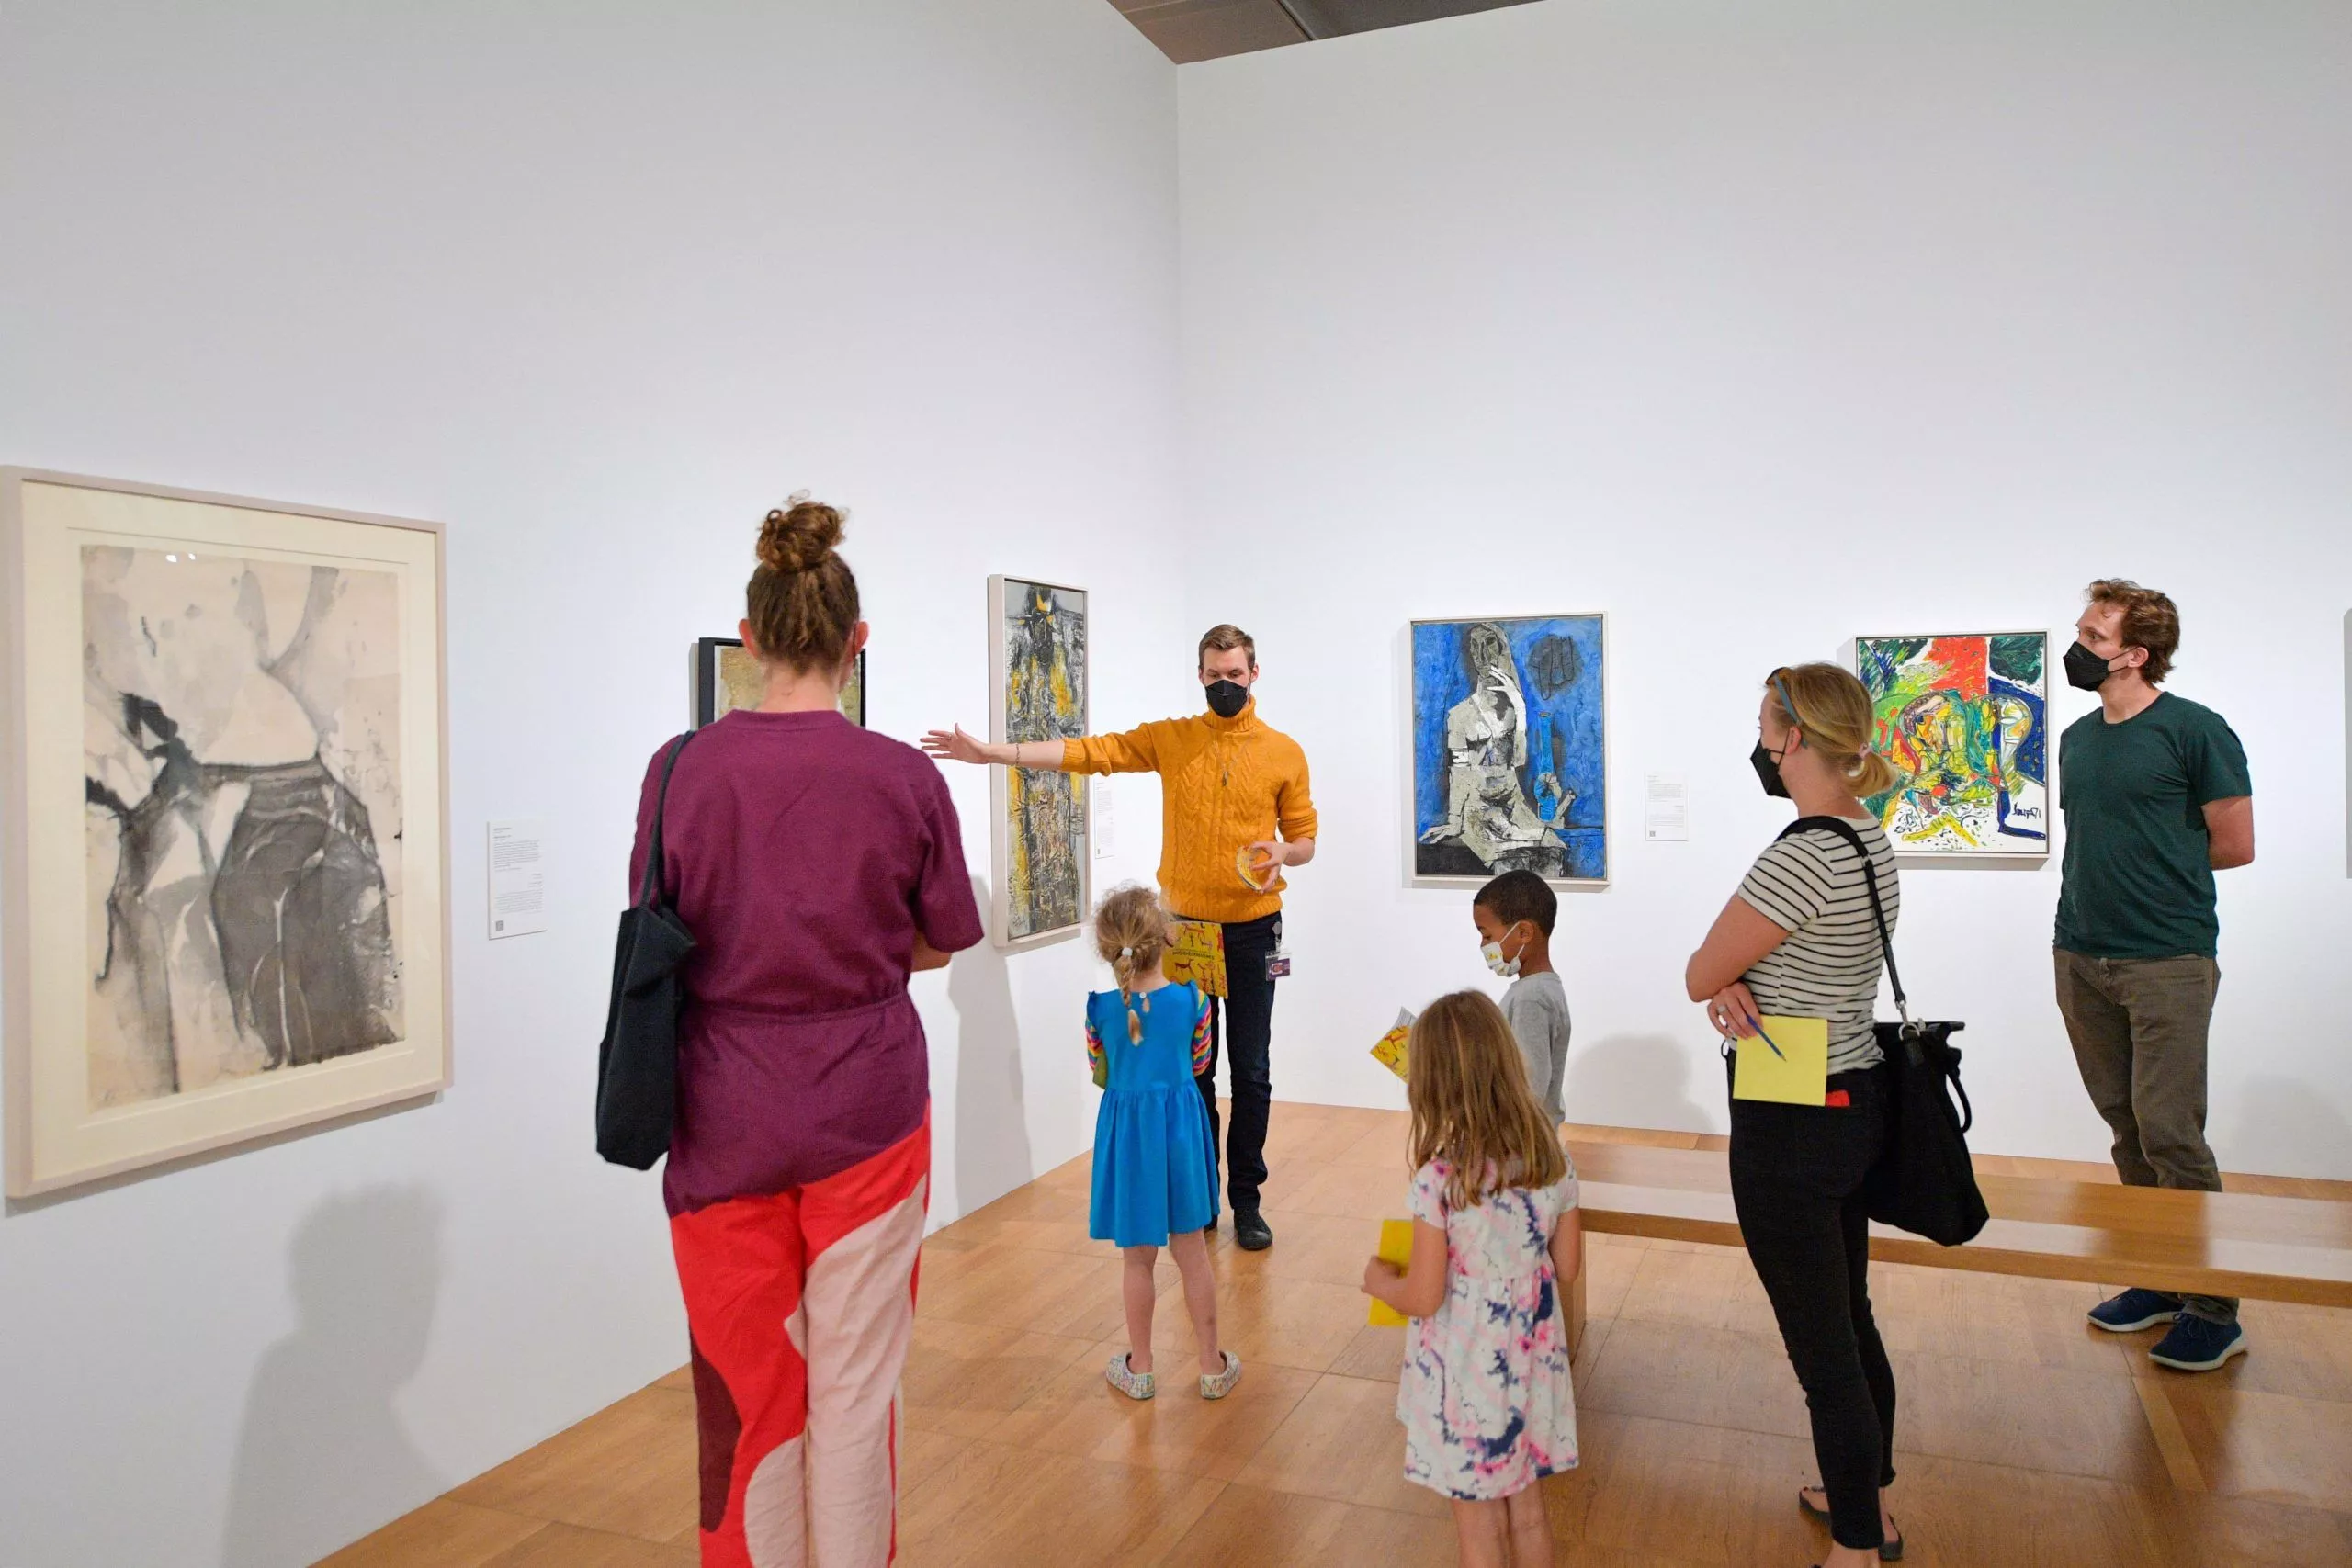 Art Gallery Event – Modernism